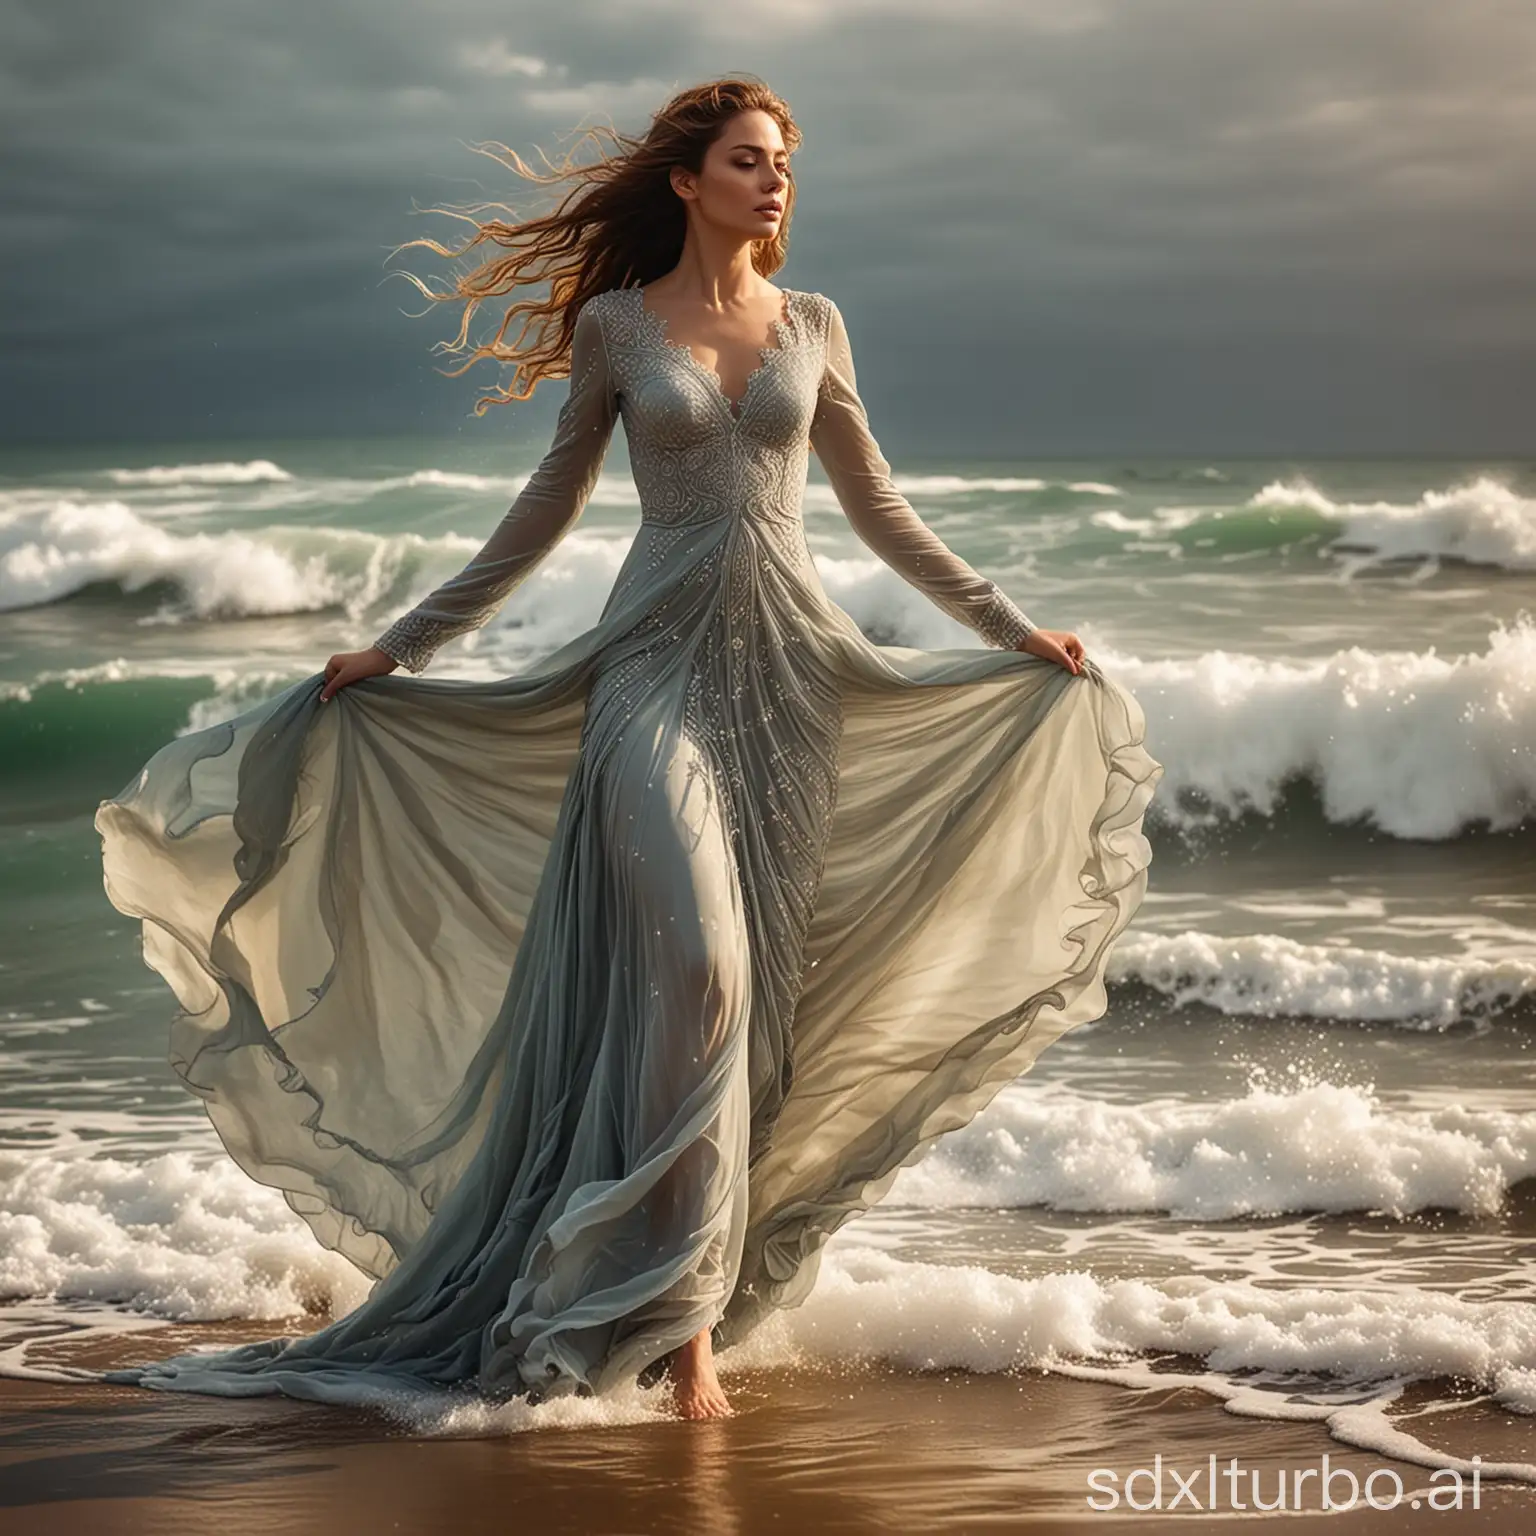 She walks in a liquid flowing dress. Ornate. Windy